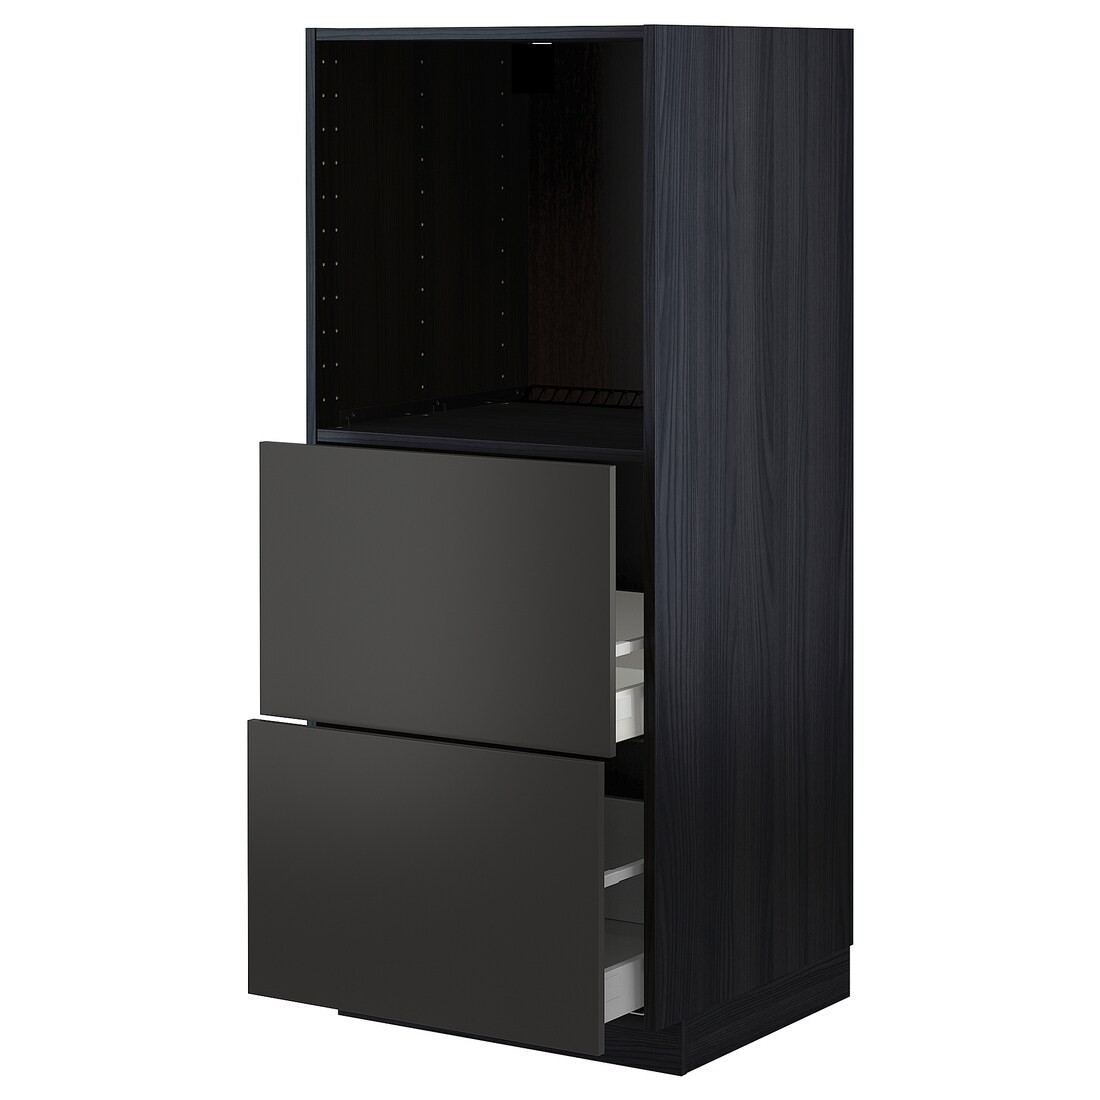 METOD МЕТОД / MAXIMERA МАКСИМЕРА Высокий шкаф с 2 ящиками для духовки, черный / Nickebo матовый антрацит, 60x60x140 см